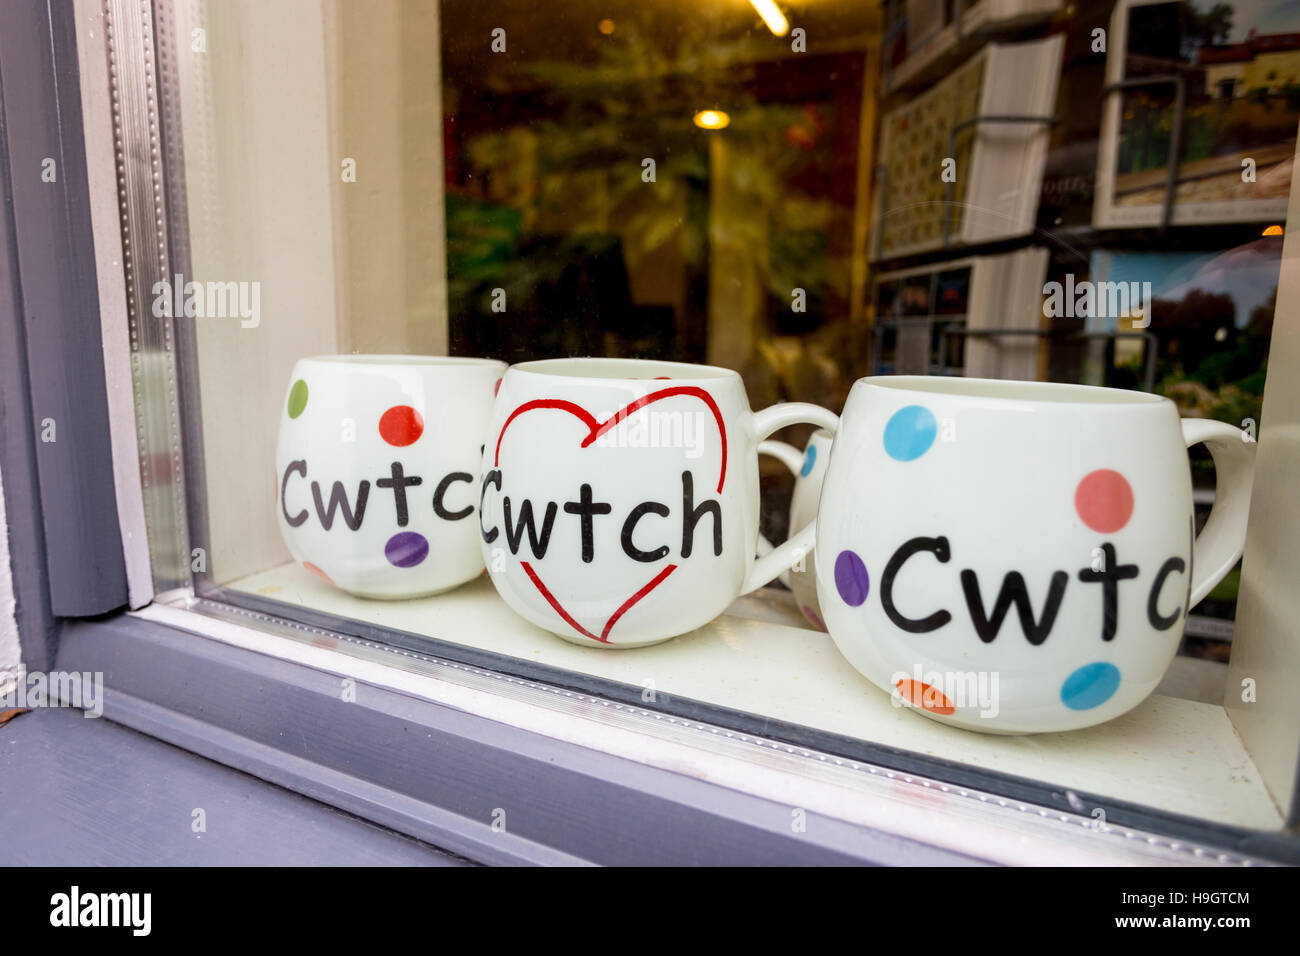 Trois tasses avec le Welsh language word Cwtch, signifiant caresser ou accolade dans une vitrine. Banque D'Images